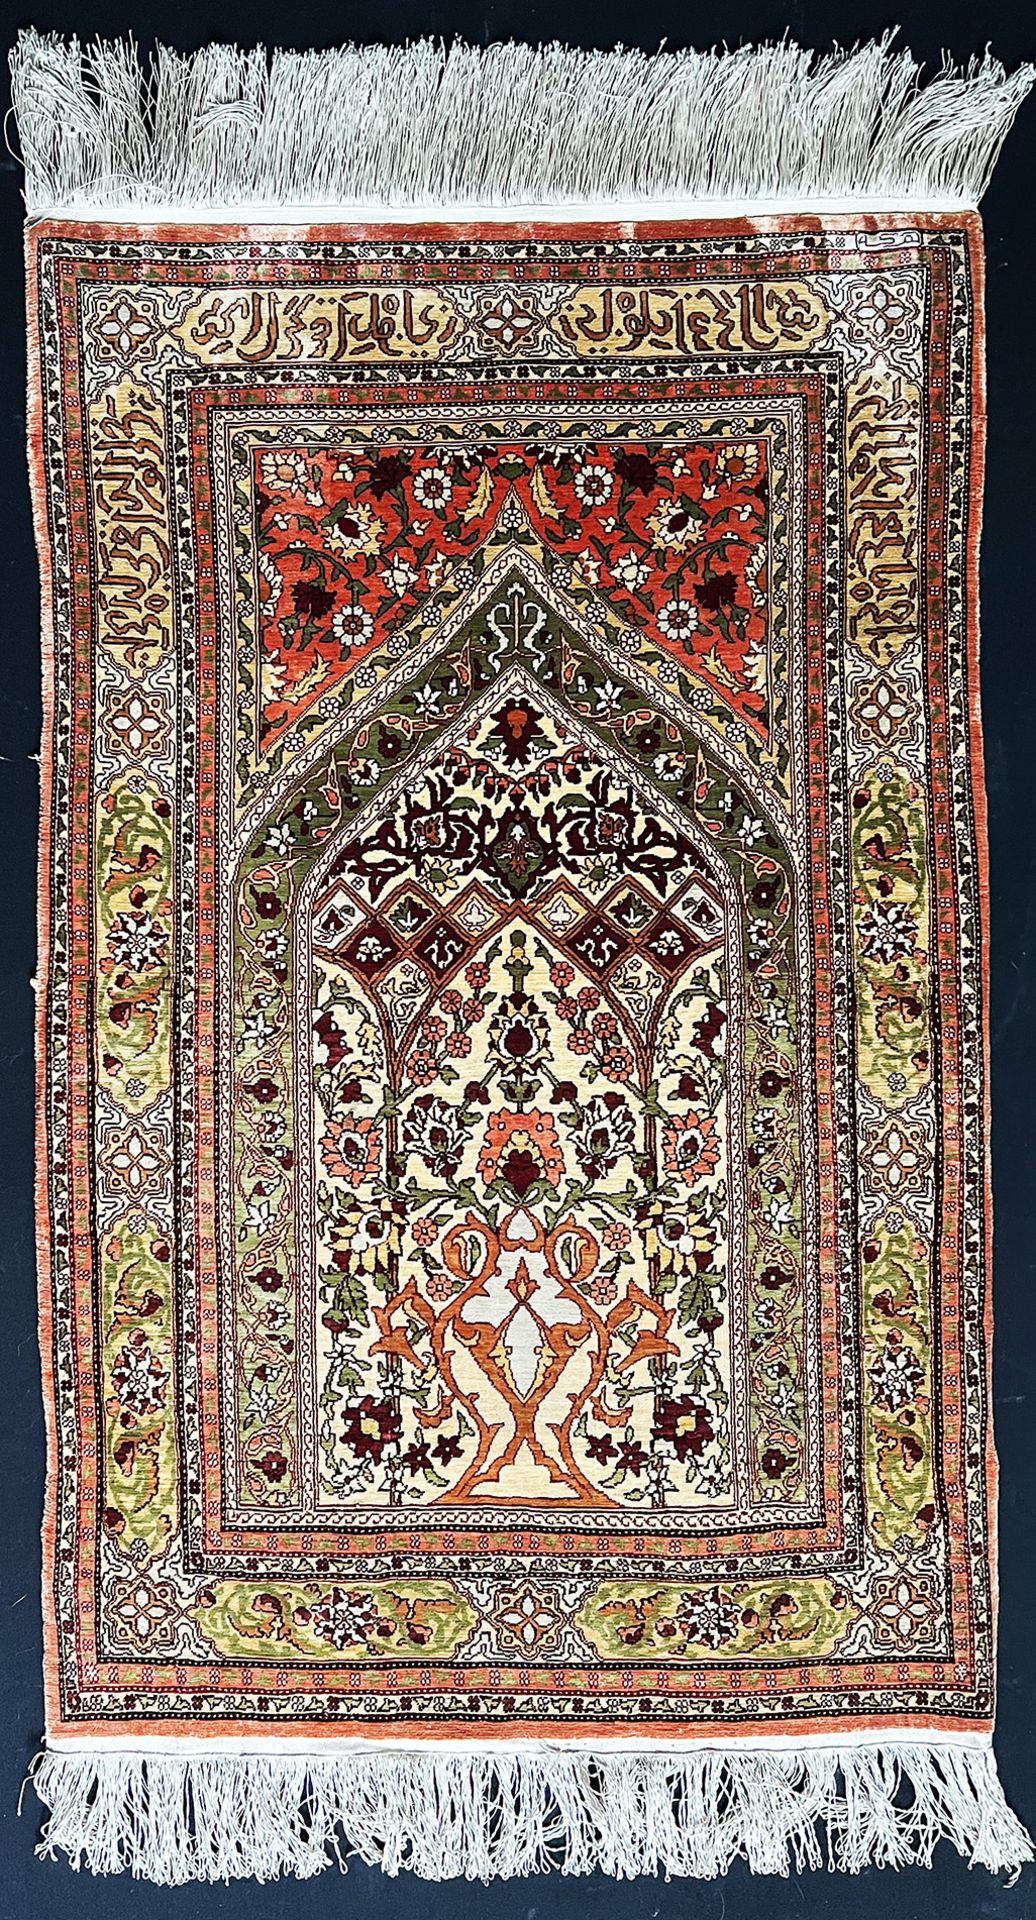 Teppich bzw. Wandteppich, Orient, Seide, mit arabischen Schriftzügen beschriftet, kaum Altersspuren,